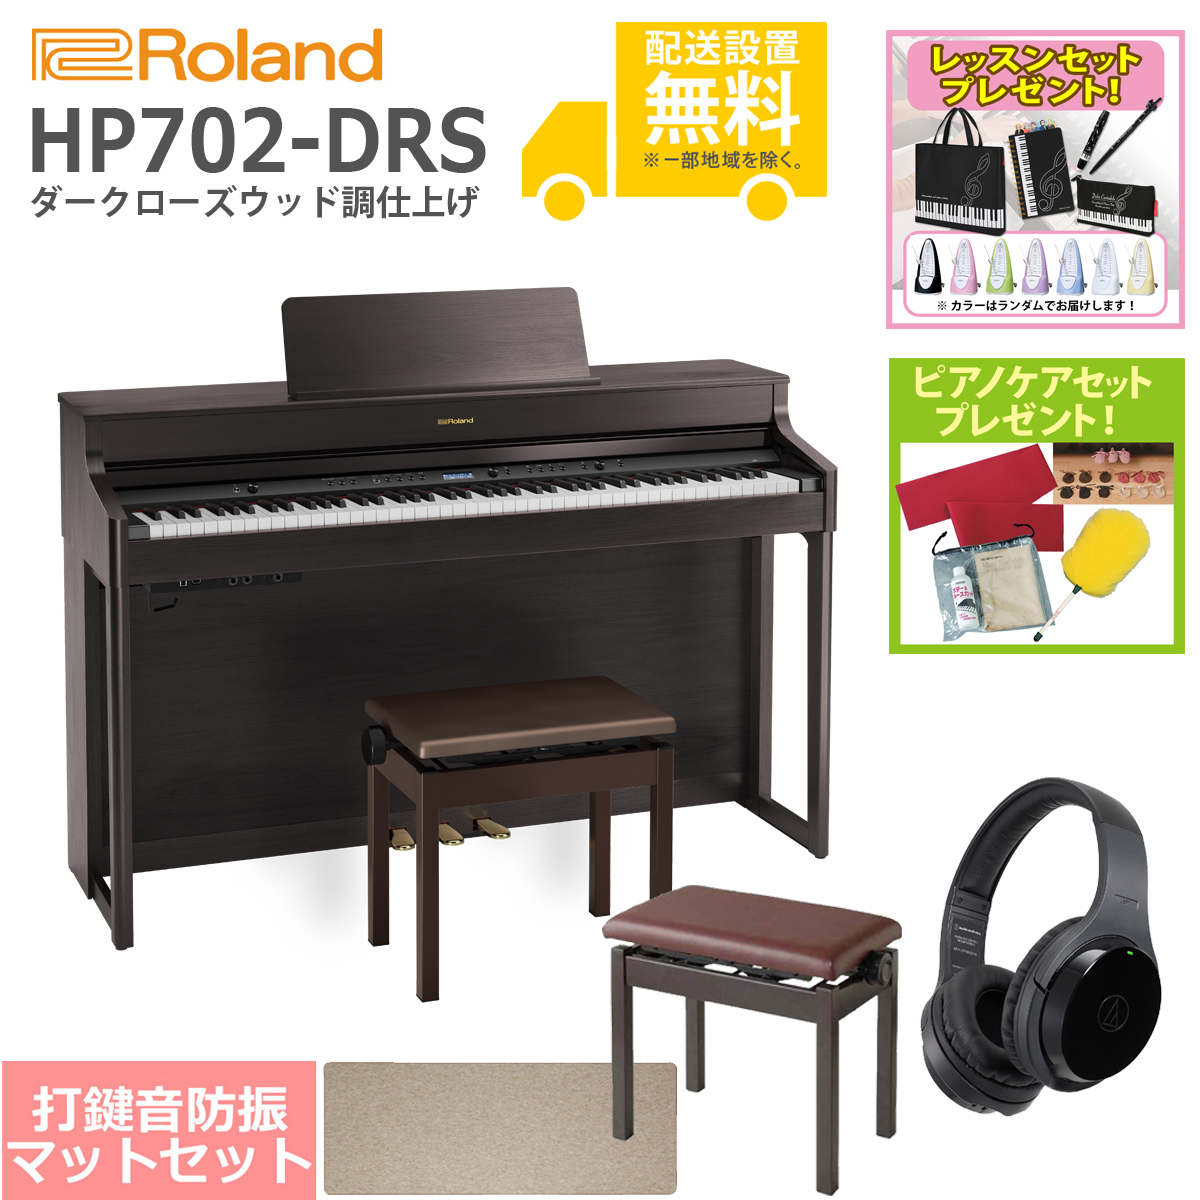 激安先着ローランド Roland HP702 ダークローズウッド DRS 電子ピアノ 総合